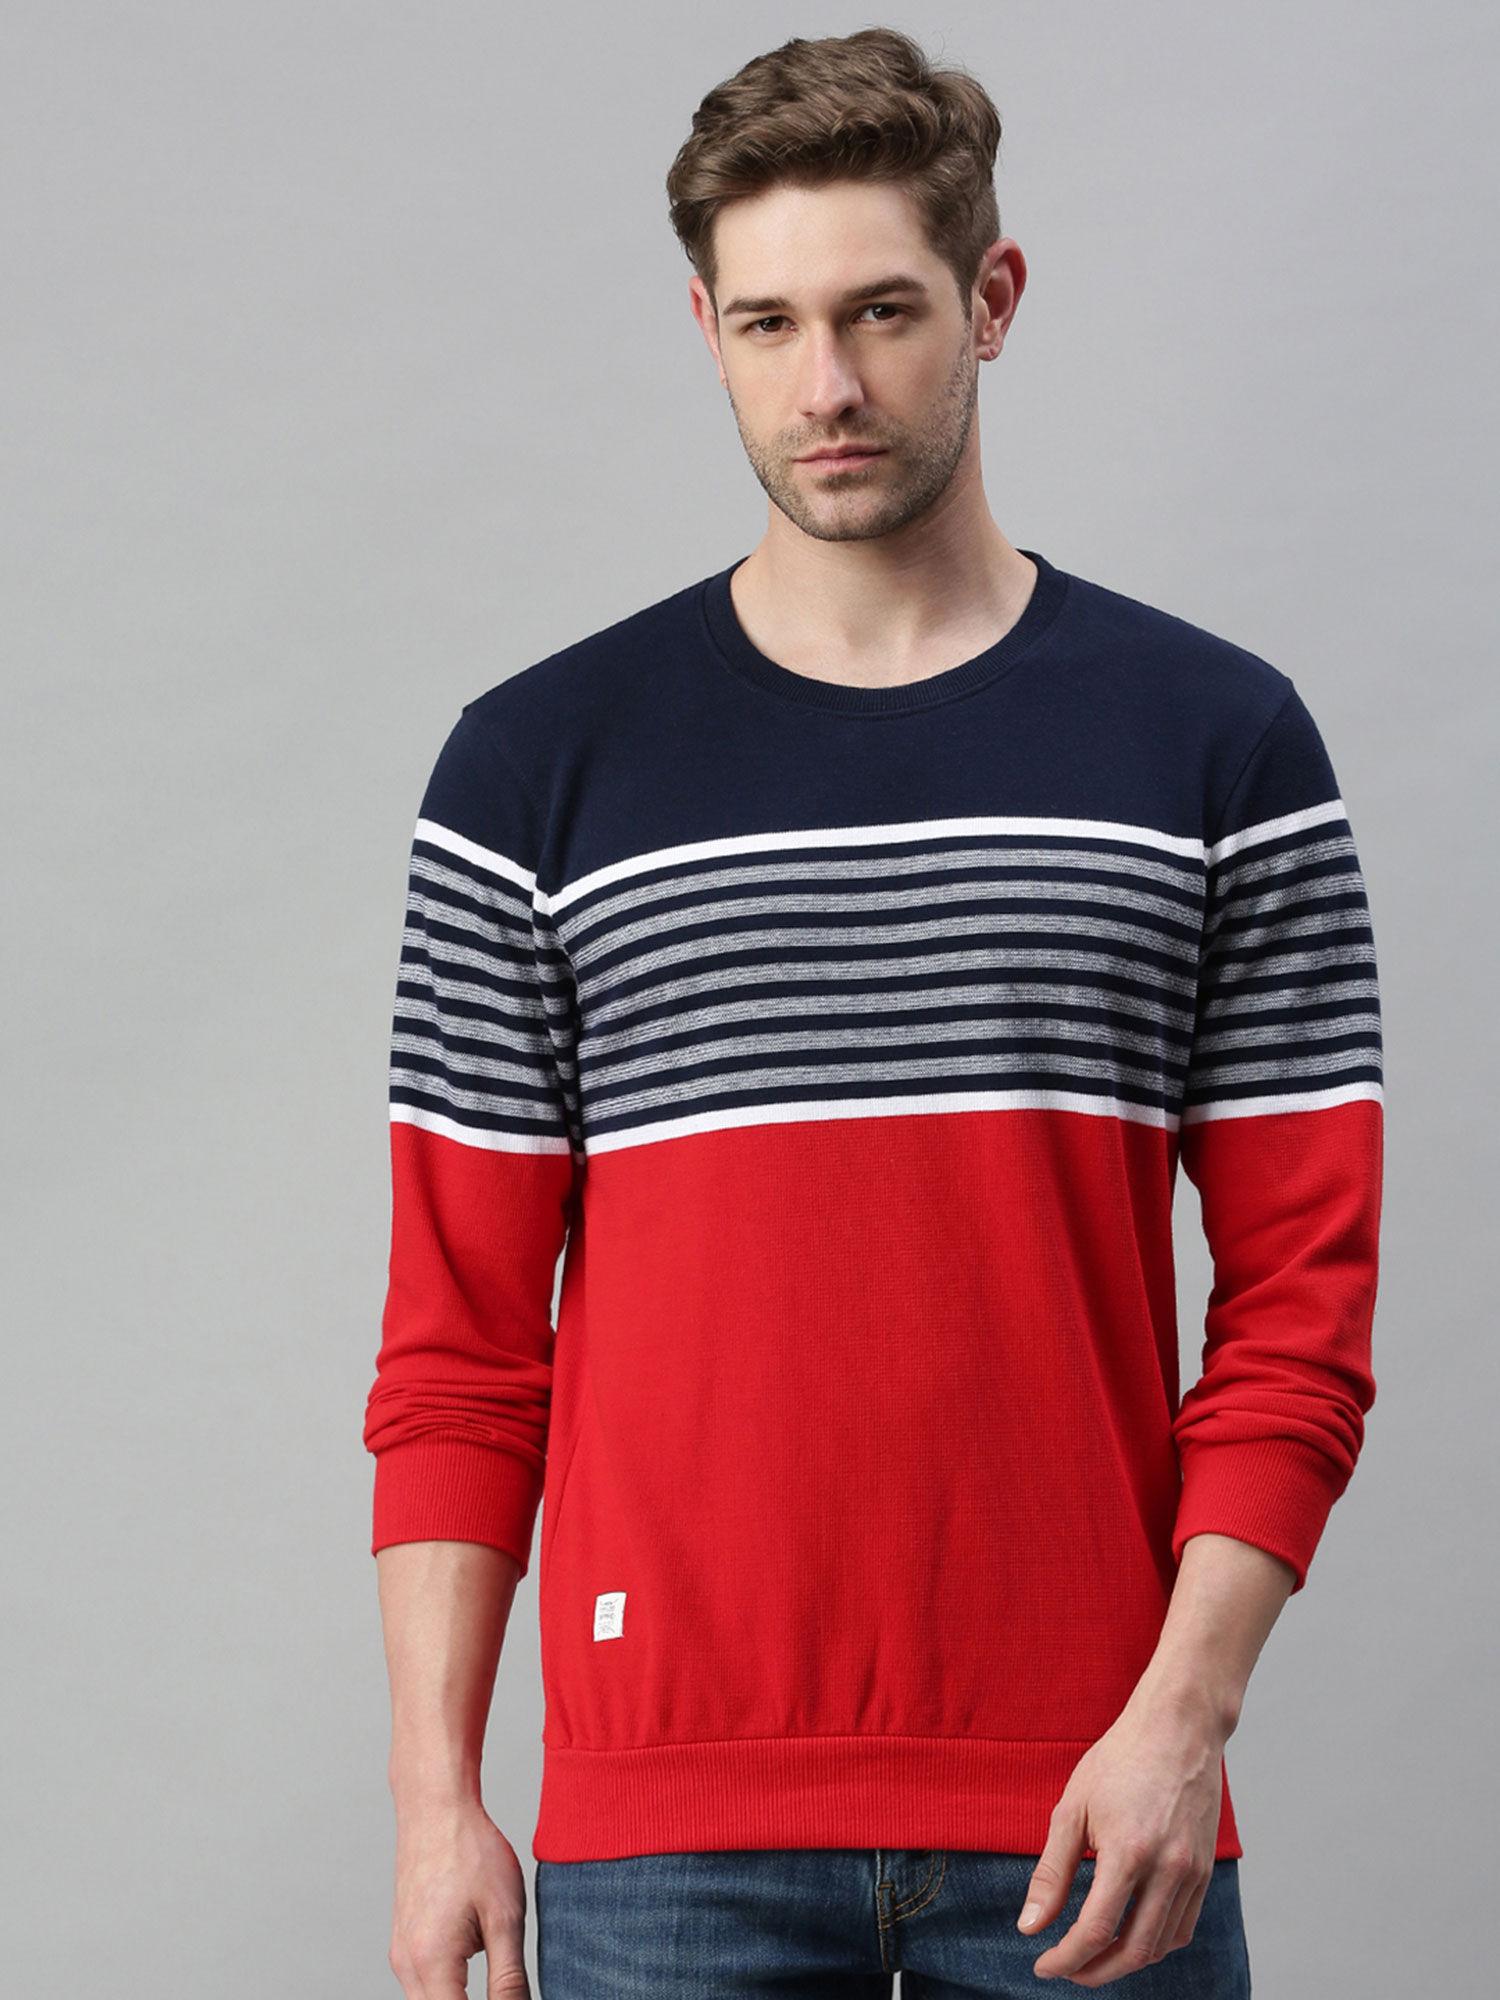 men's cotton casual red navy sweatshirt